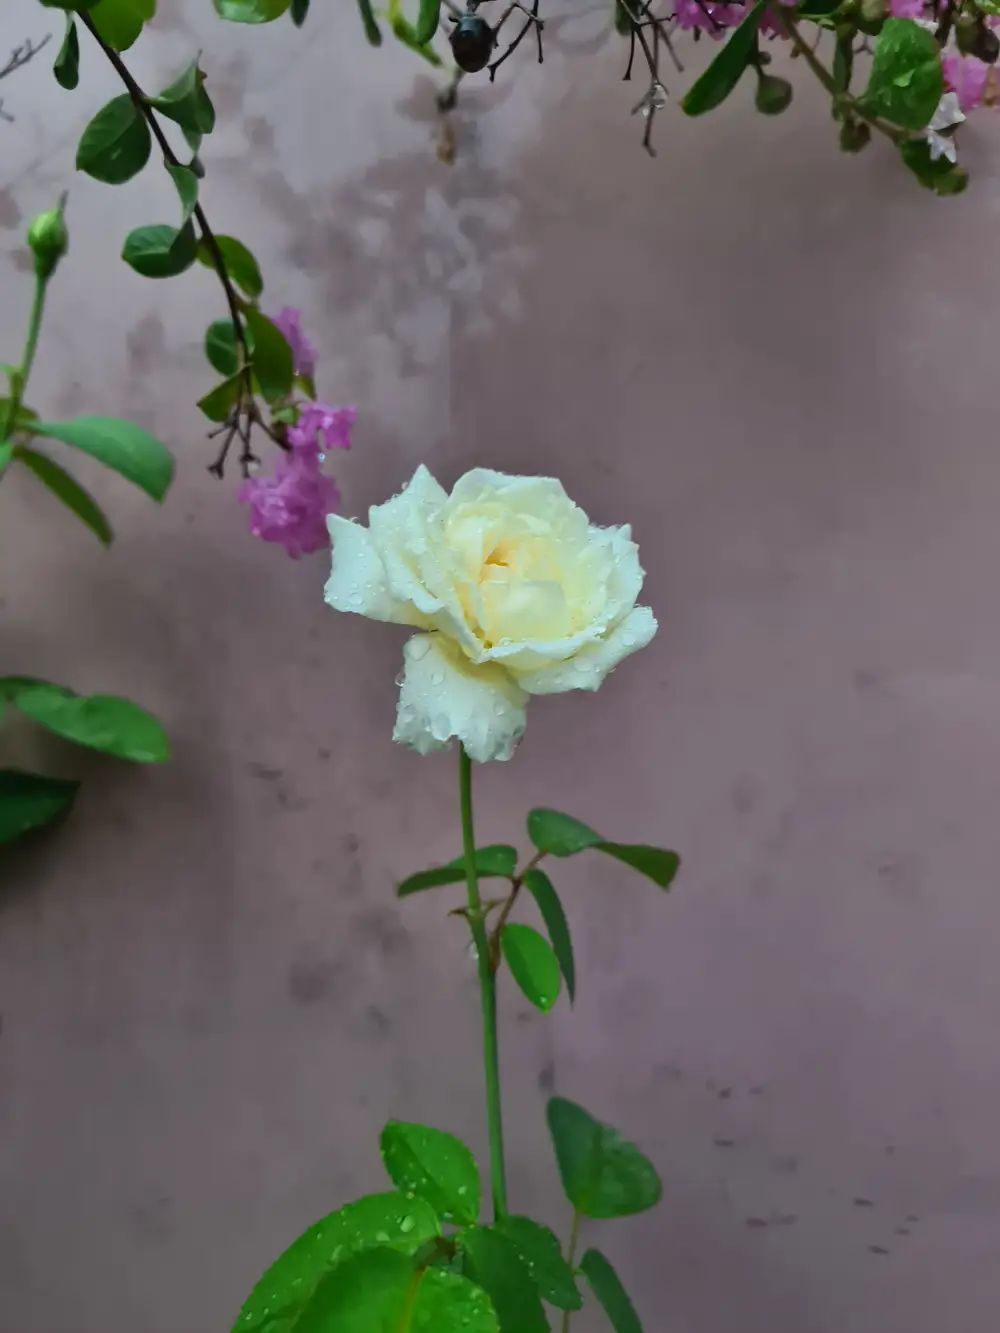 Snapshot of a white rose